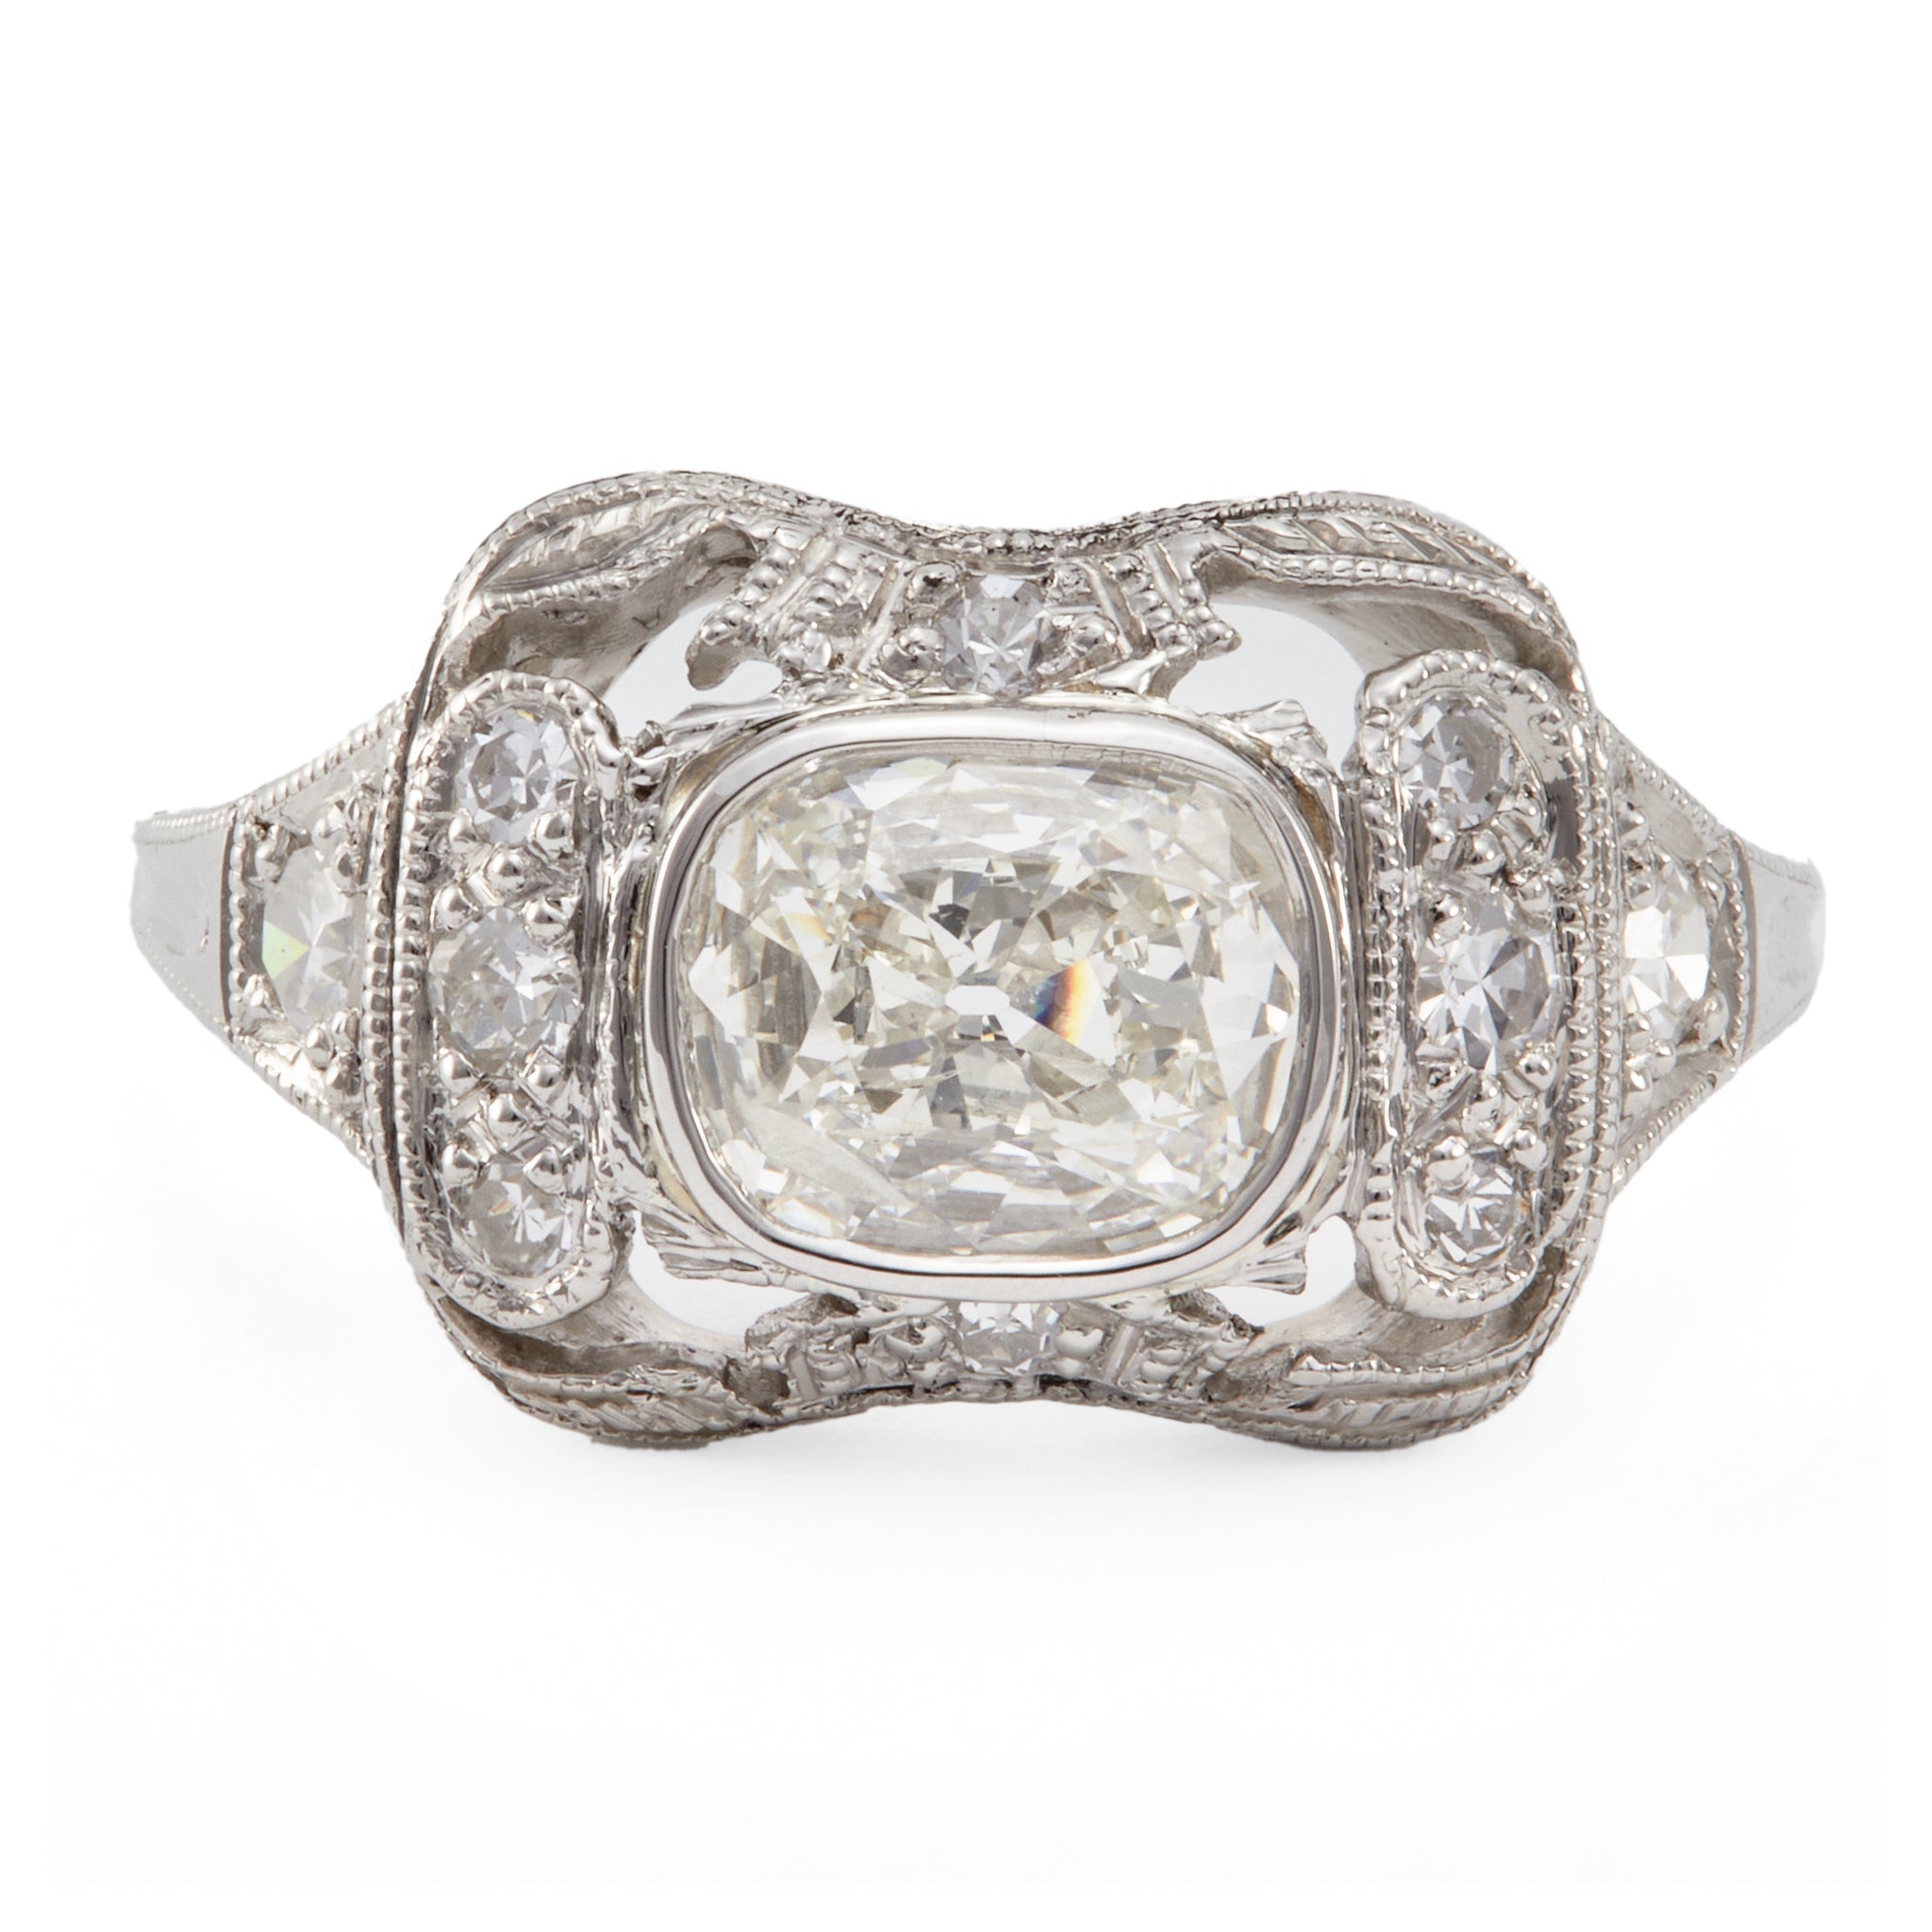 Edwardian GIA 0.91 Carat Cushion Cut Diamond Platinum Ring Rings Jack Weir & Sons   